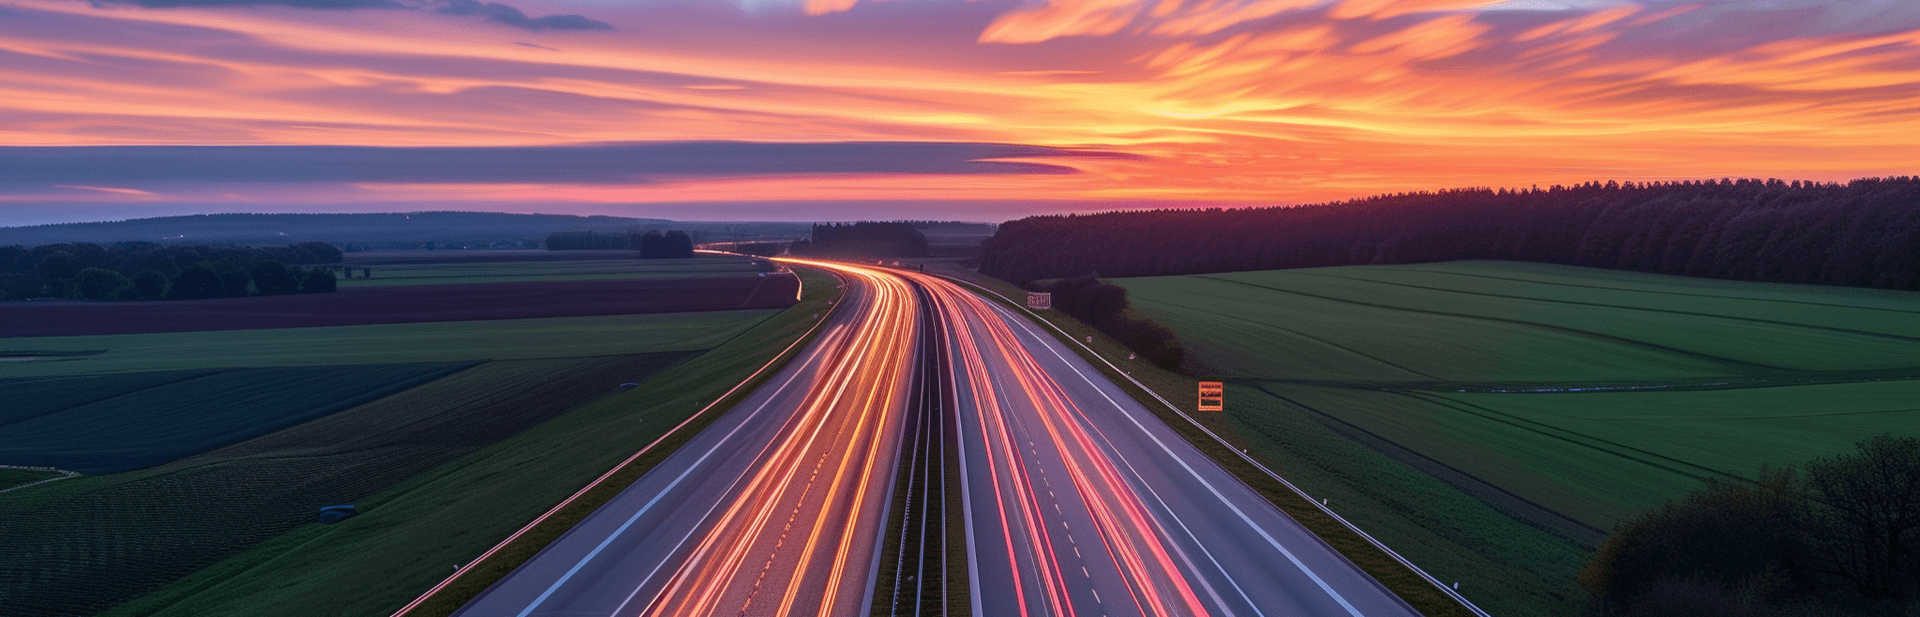 Bild einer Autobahn in Sachsen bei Sonnenuntergang.